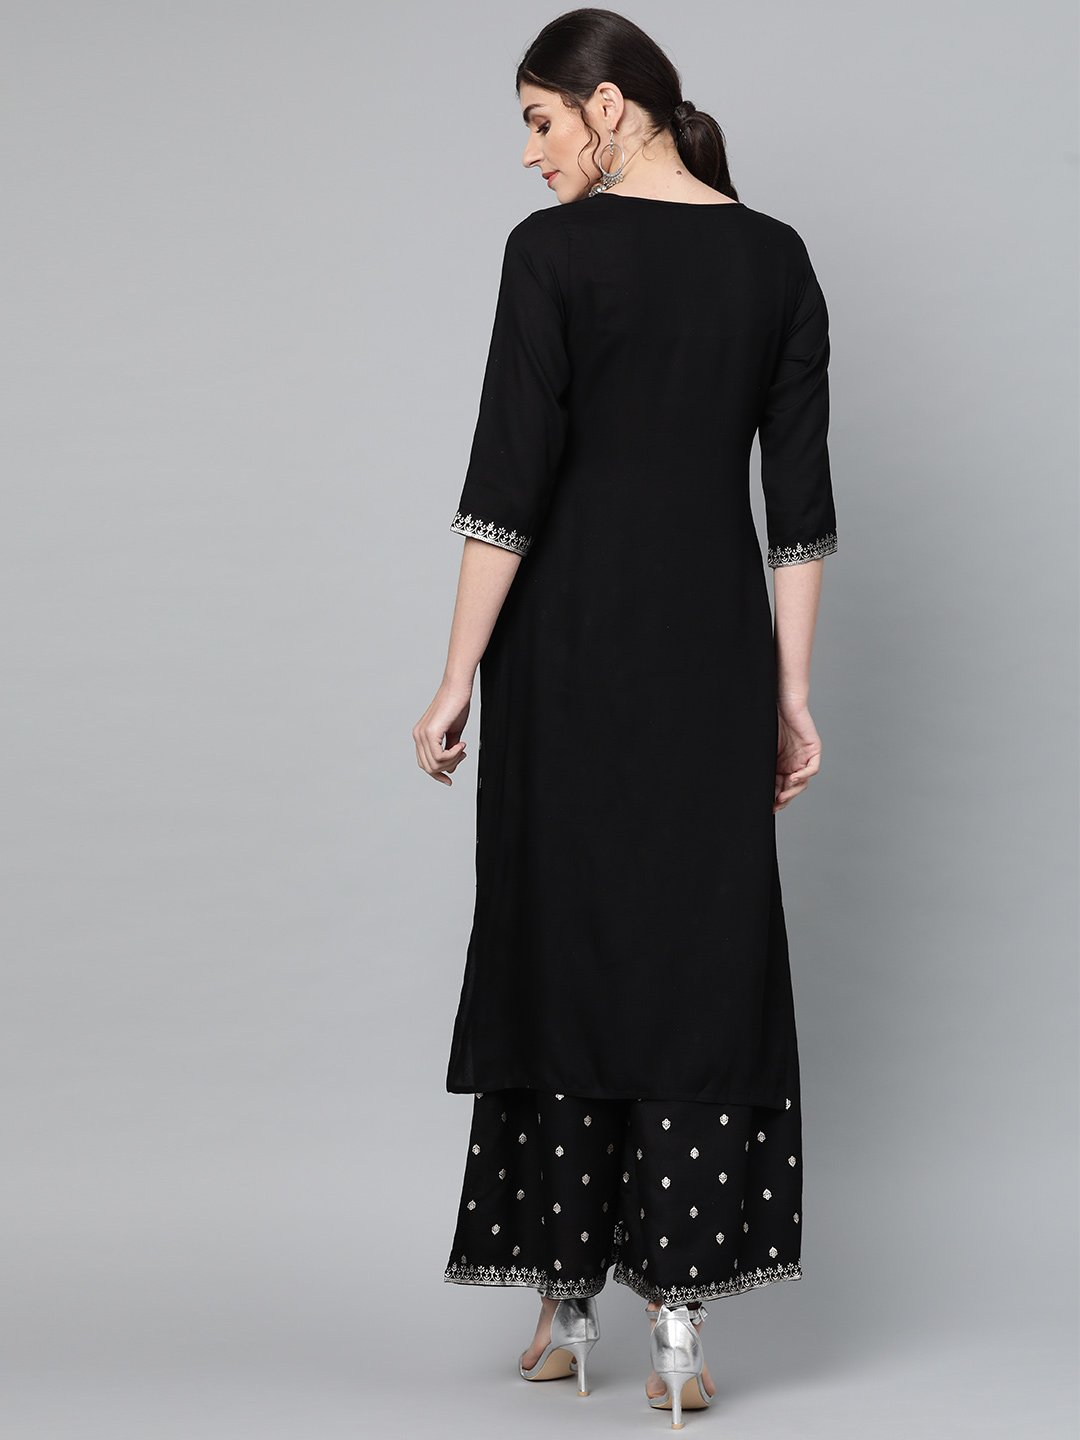 Ishin Women's Rayon Black Embellished A-Line Kurta Palazzo Set